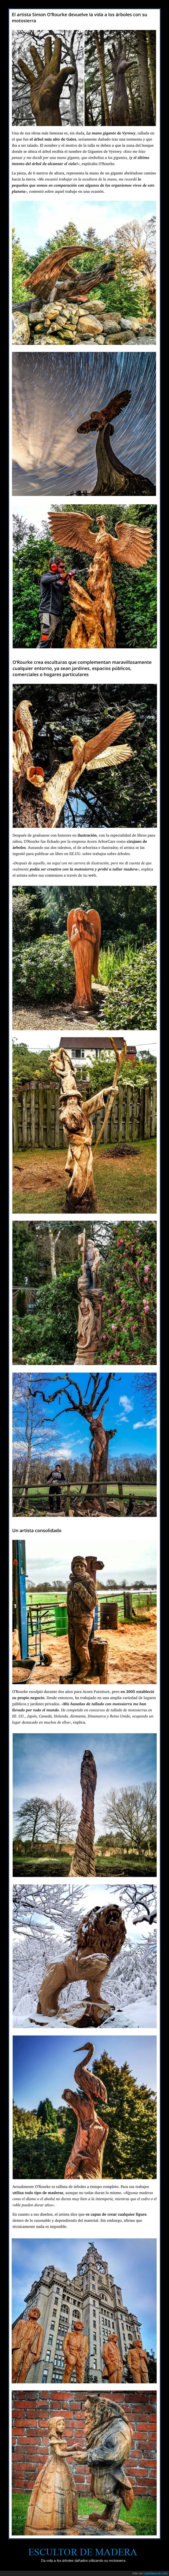 escultor,madera,árboles